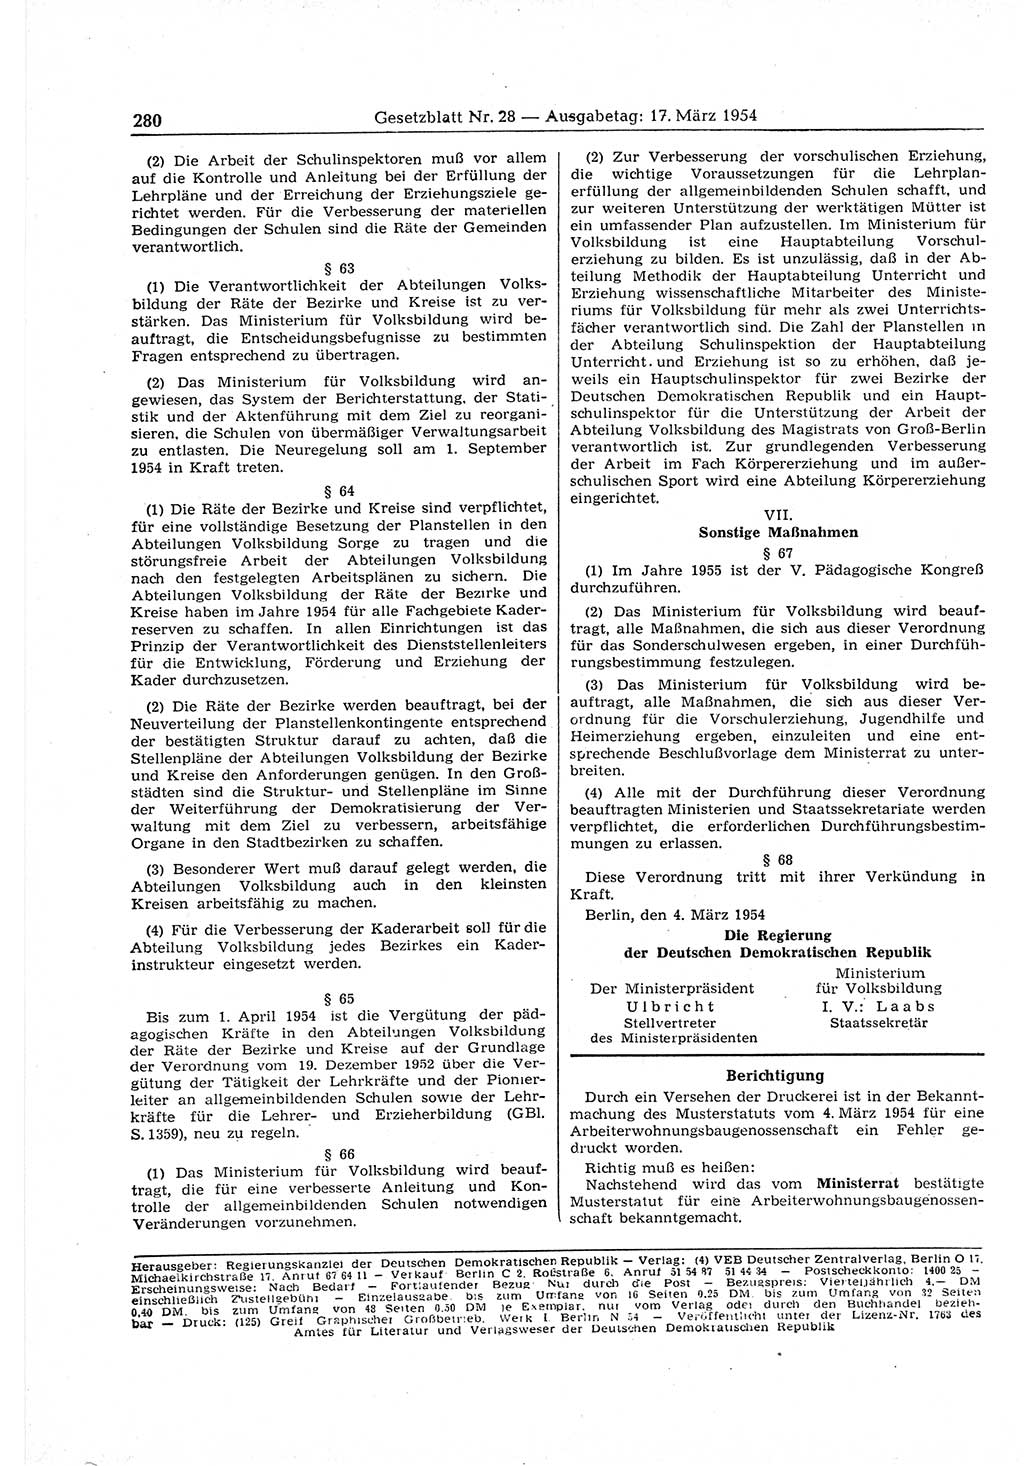 Gesetzblatt (GBl.) der Deutschen Demokratischen Republik (DDR) 1954, Seite 280 (GBl. DDR 1954, S. 280)